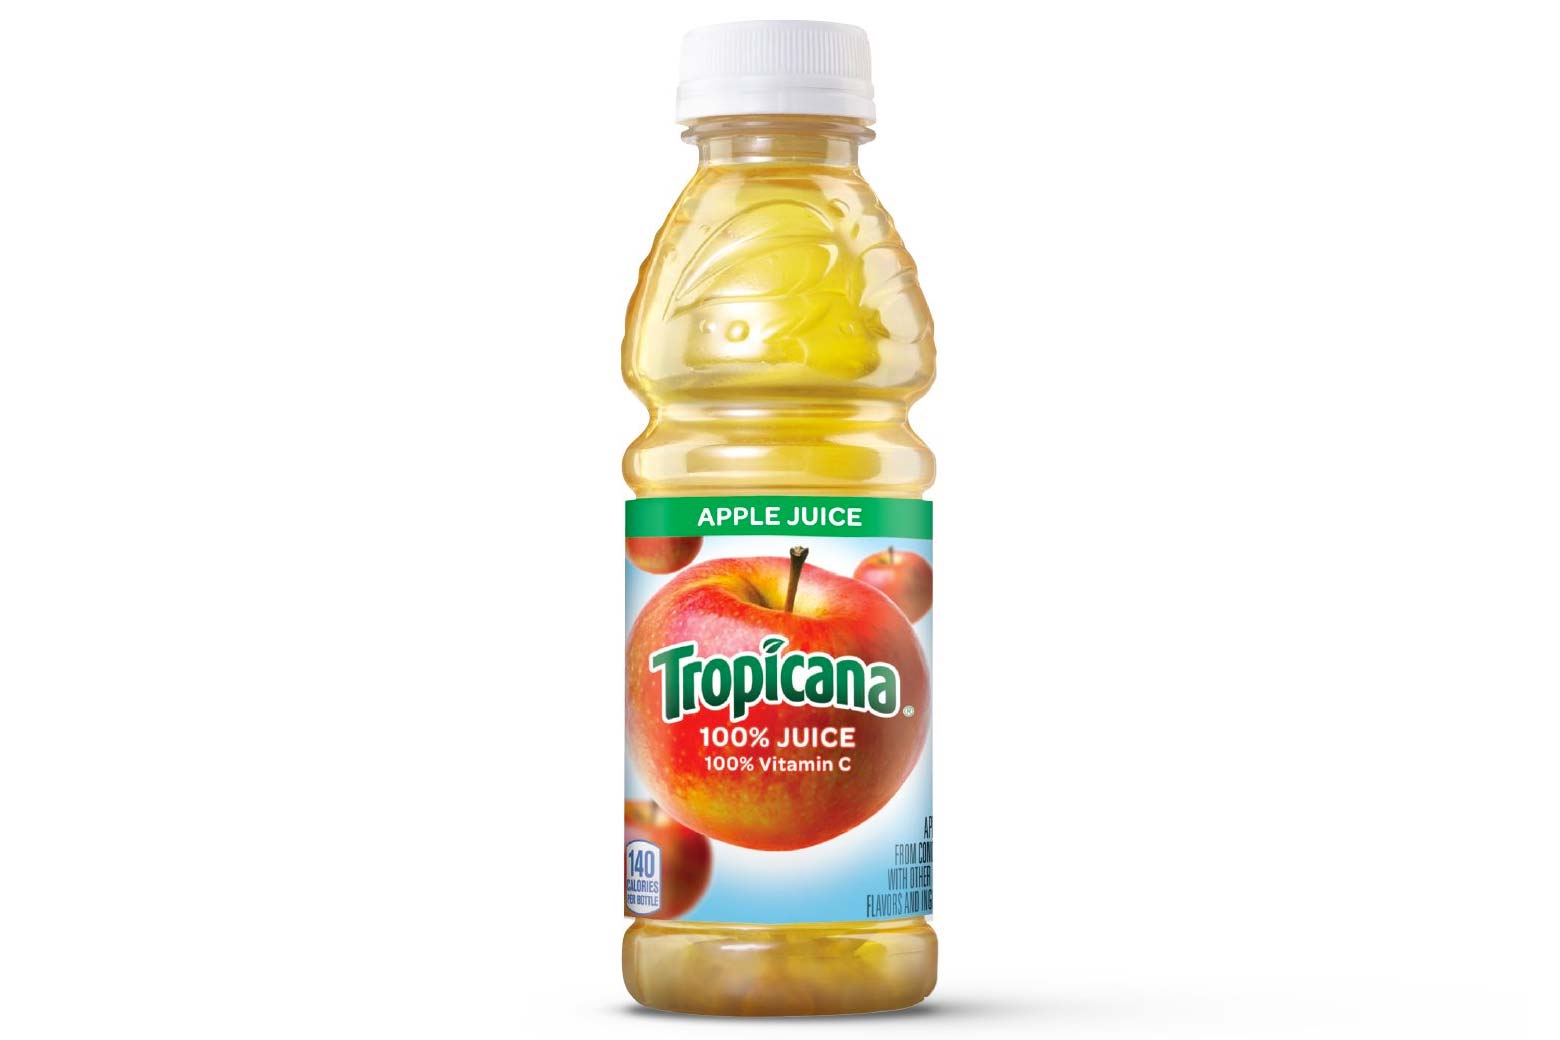 Tropicana apple juice.